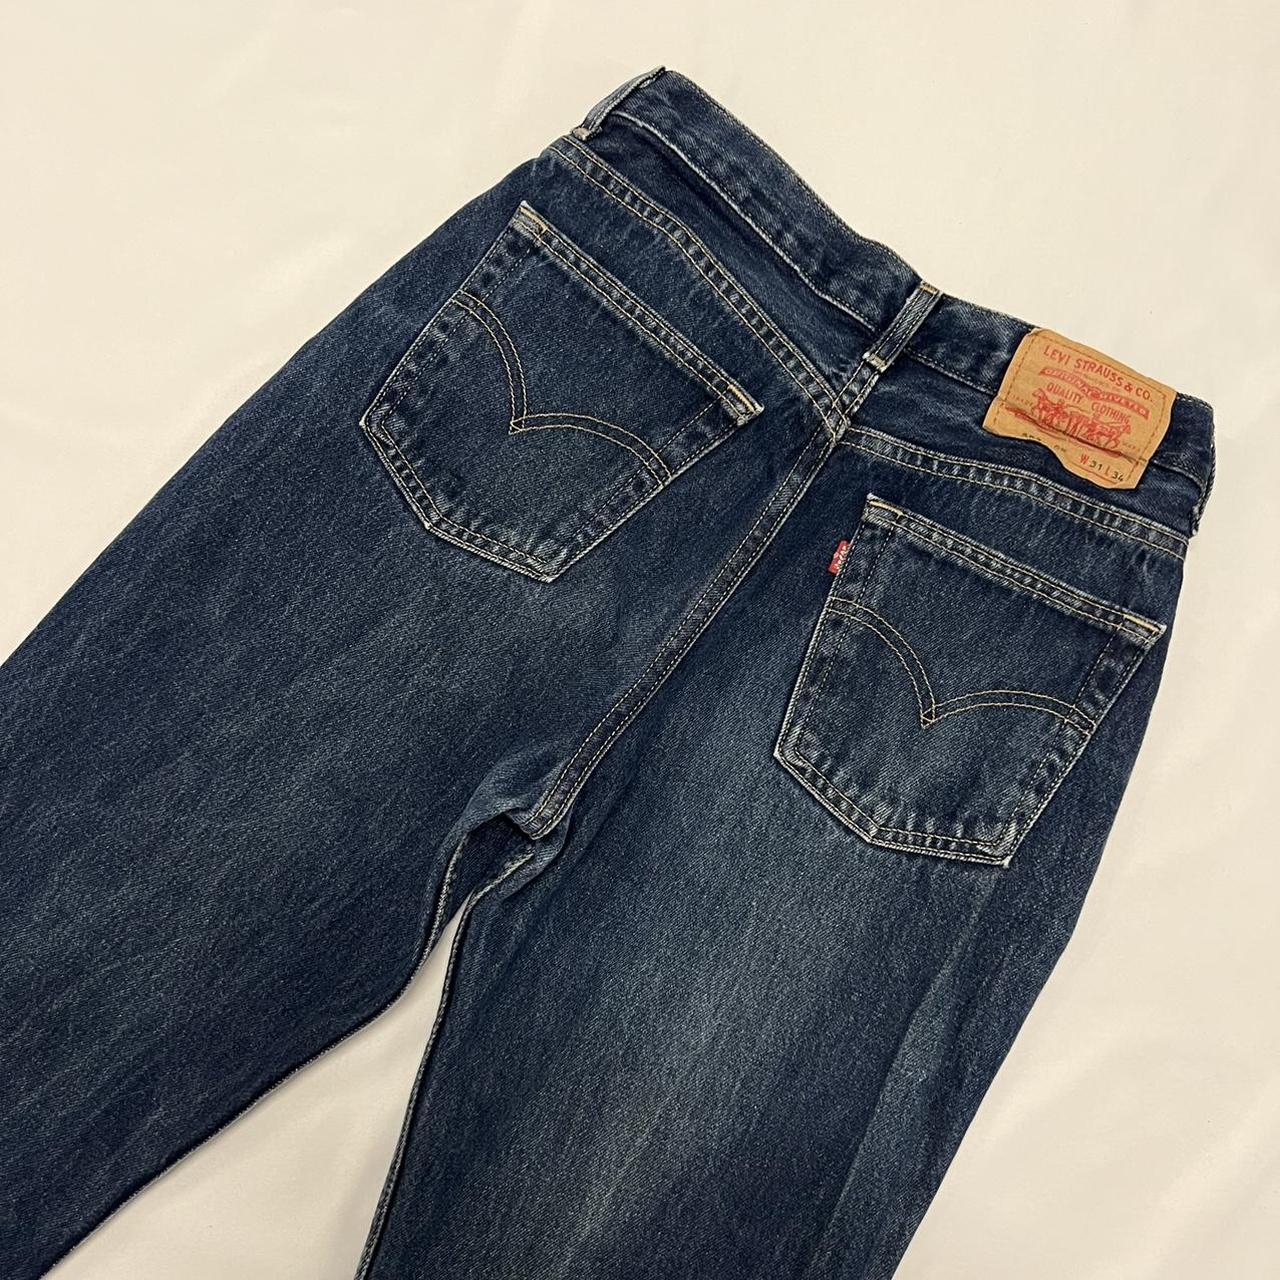 blue denim Levi jeans, style 583 W31 L34 little... - Depop